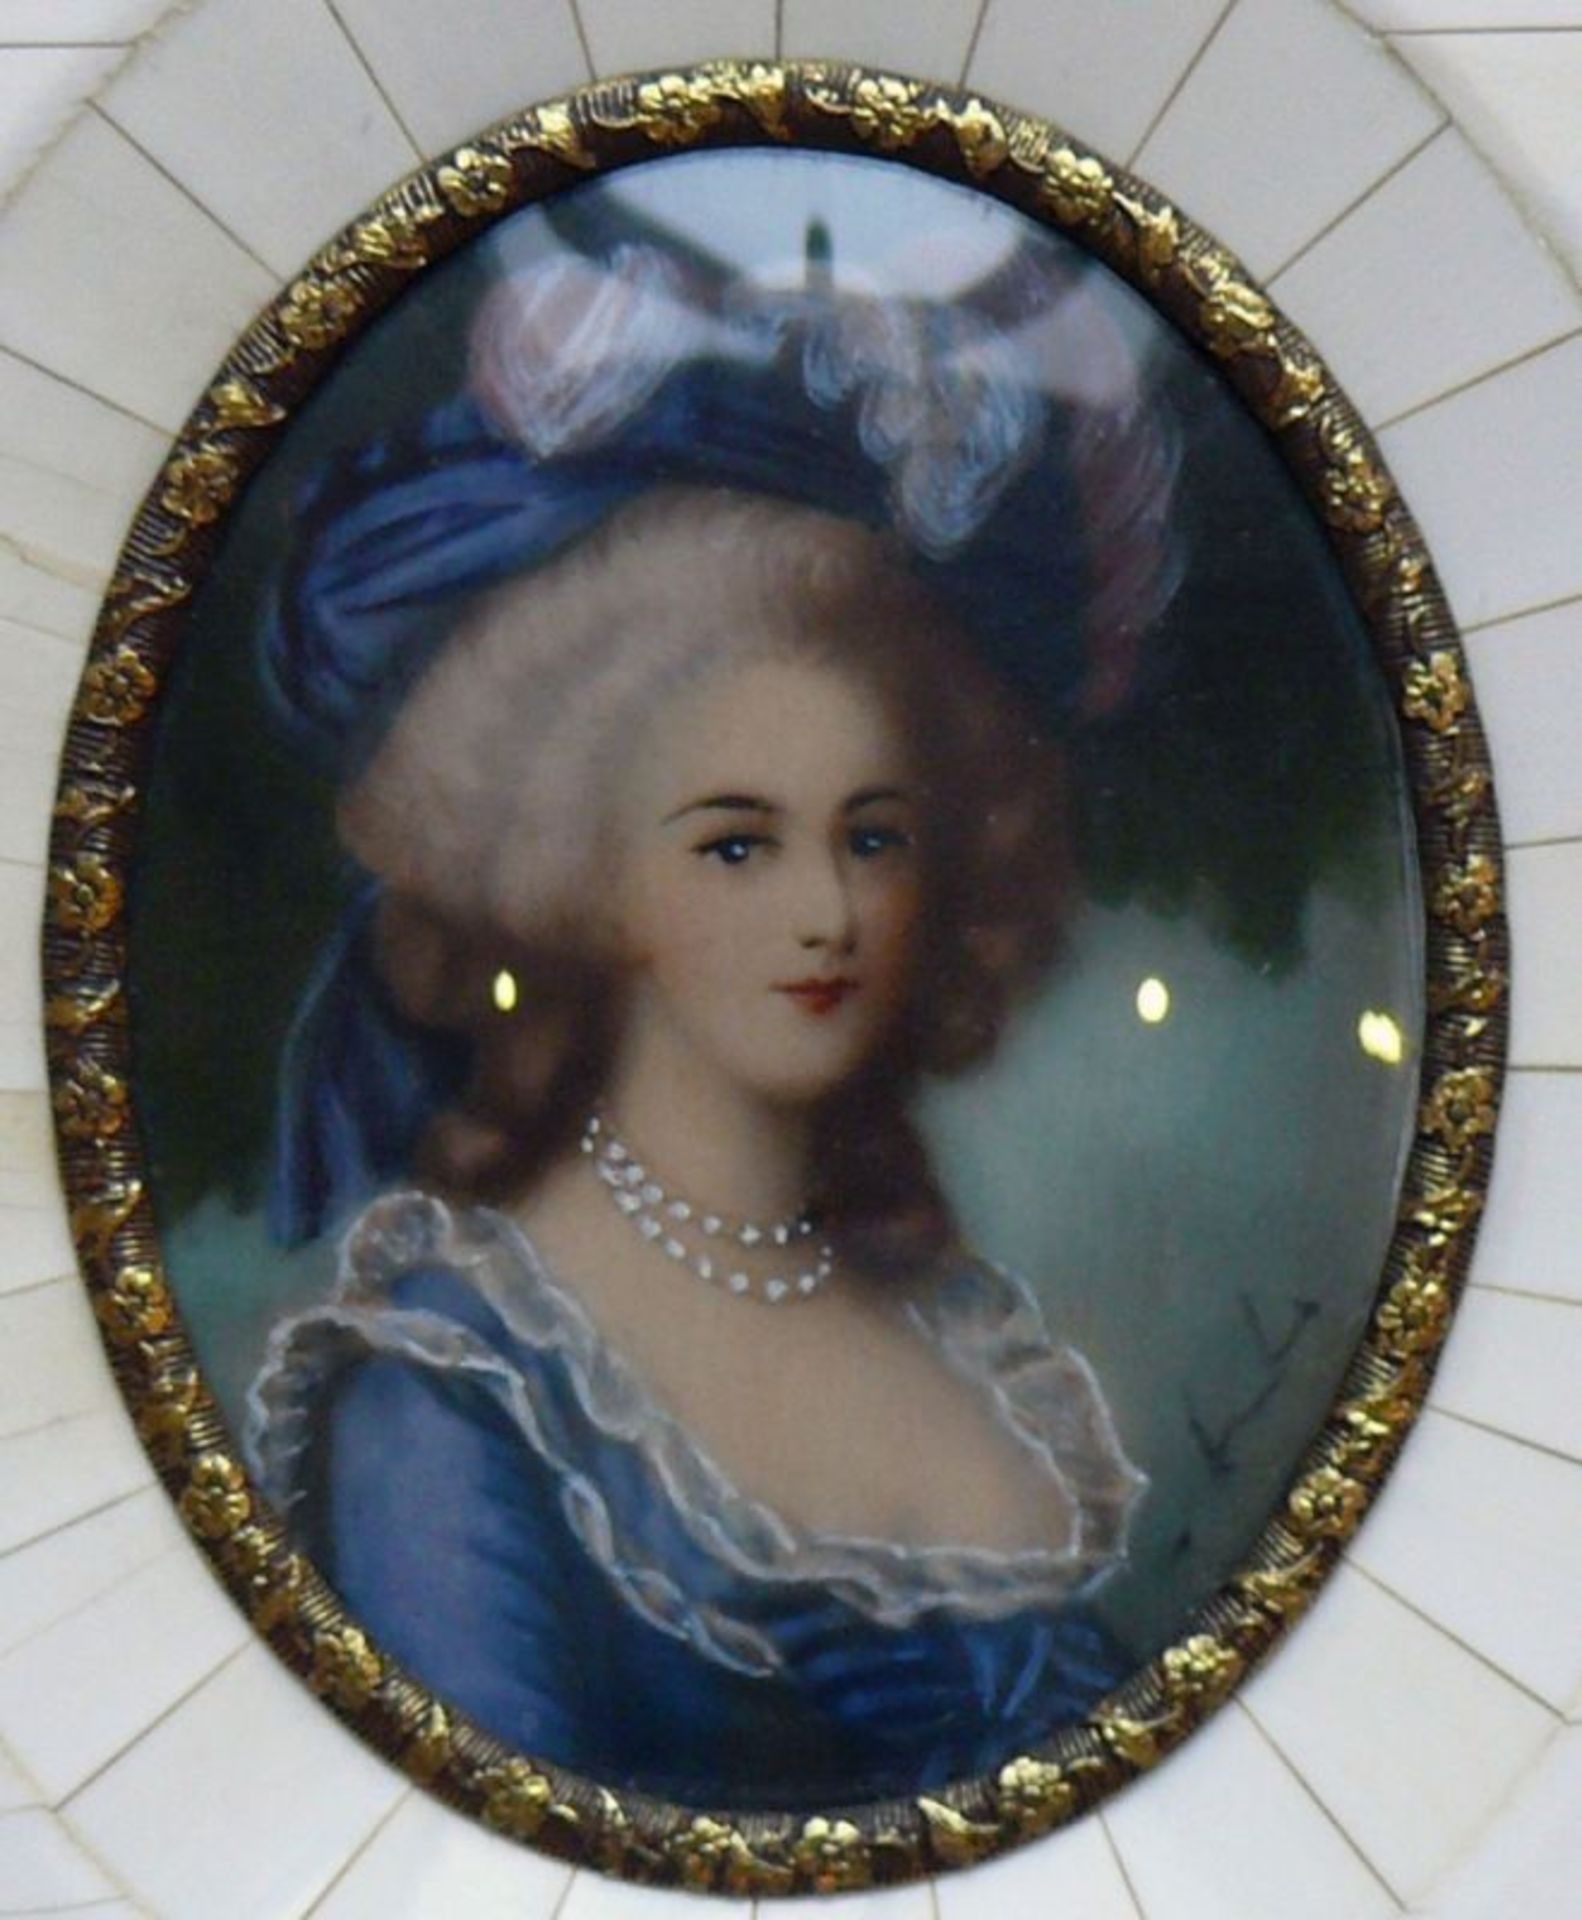 Miniaturist (20.Jh.) 3 div. Frauendarstellungen; "Maria Antoinette", "Lady Hamilton" sowie - Bild 4 aus 4